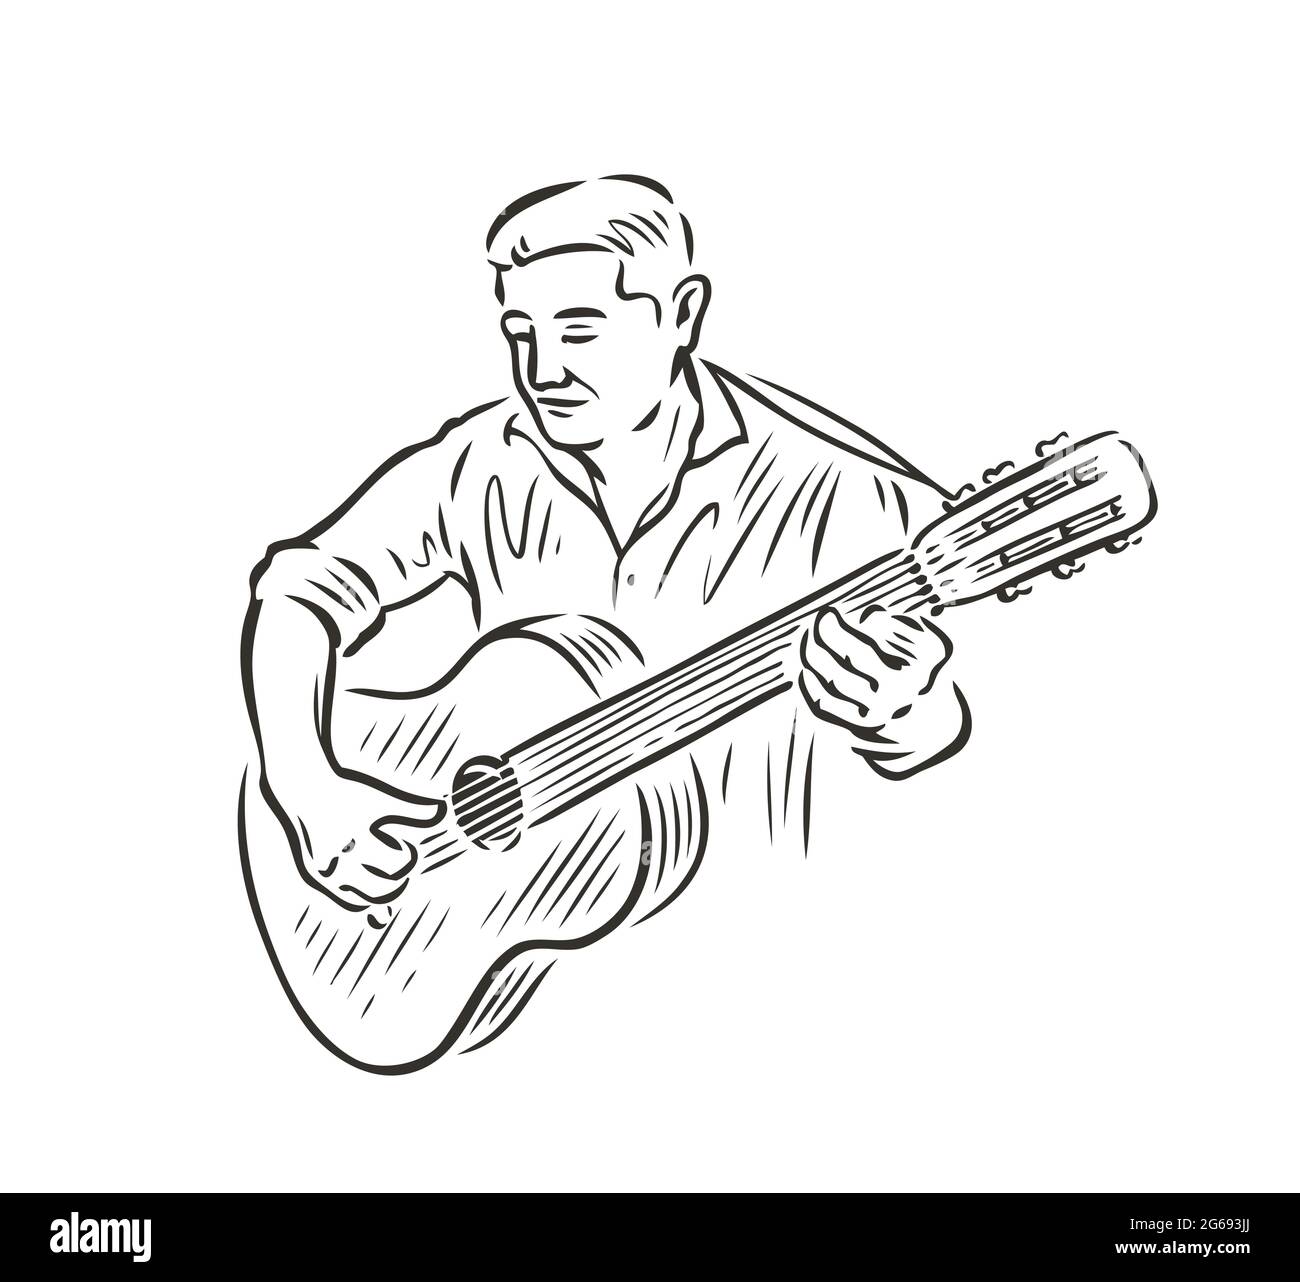 Uomo che suona la chitarra. Concetto musicale in stile vintage sketch Illustrazione Vettoriale